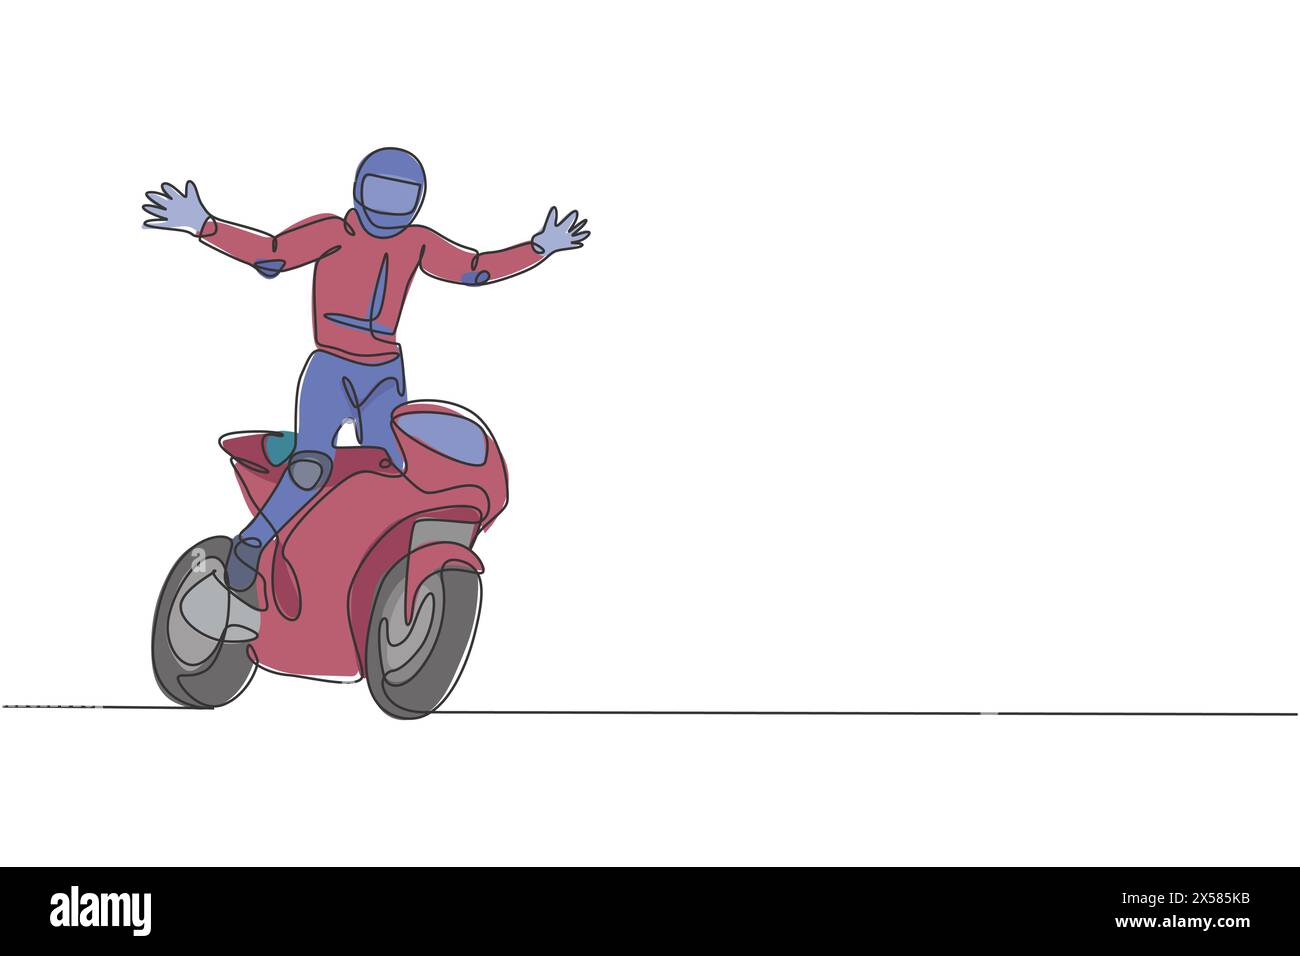 Eine einzelne Zeichnung eines jungen Motorradfahrers öffnet seine Hände, um seine gewinnende Vektor-Illustration zu feiern. Superbike-Rennkonzept. Moderner Continuou Stock Vektor